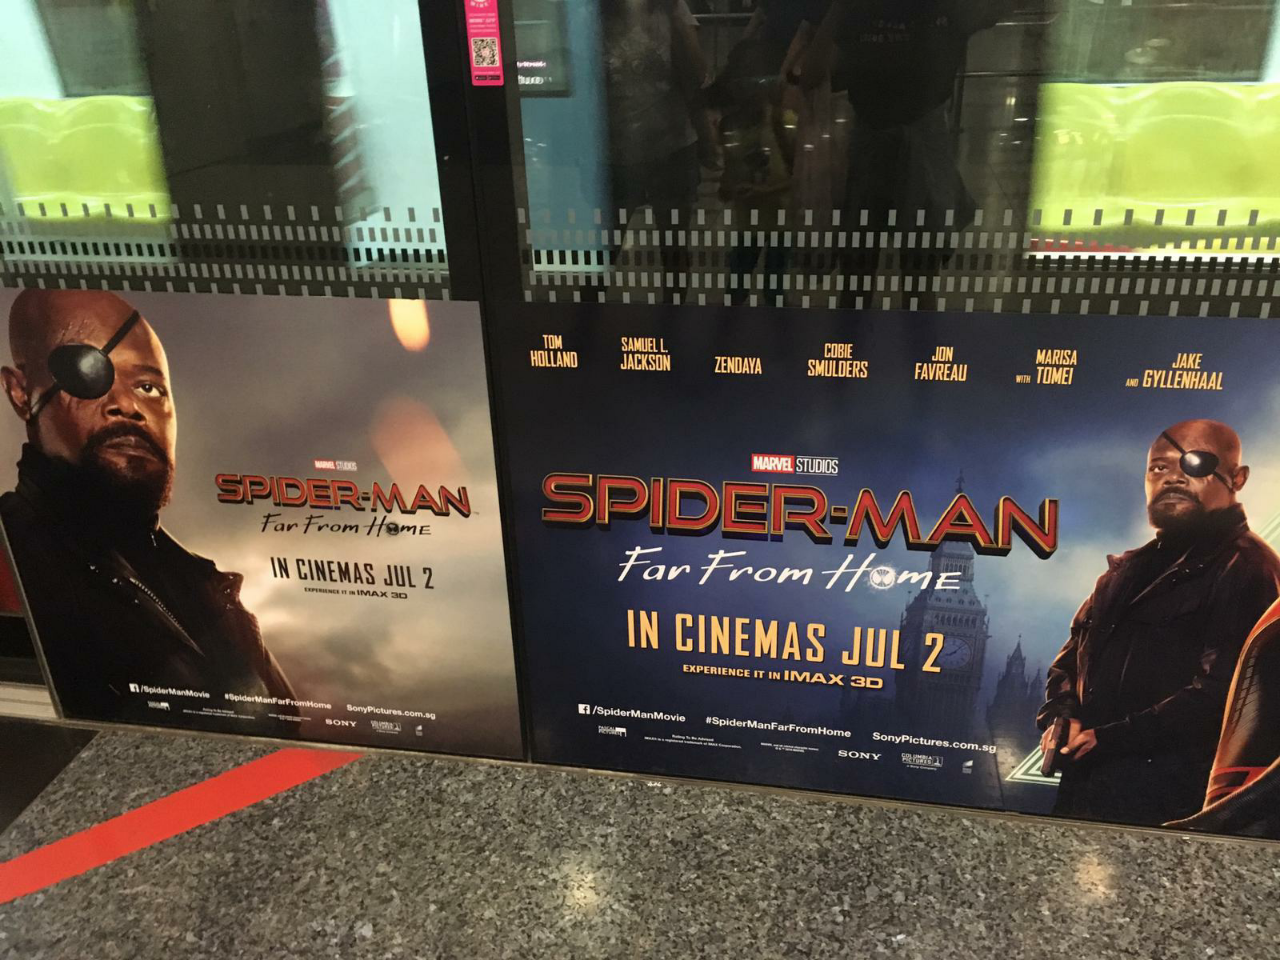 Kocak, Penutup Mata Nick Fury Salah Edit di Poster Promo Spiderman: Far from Home